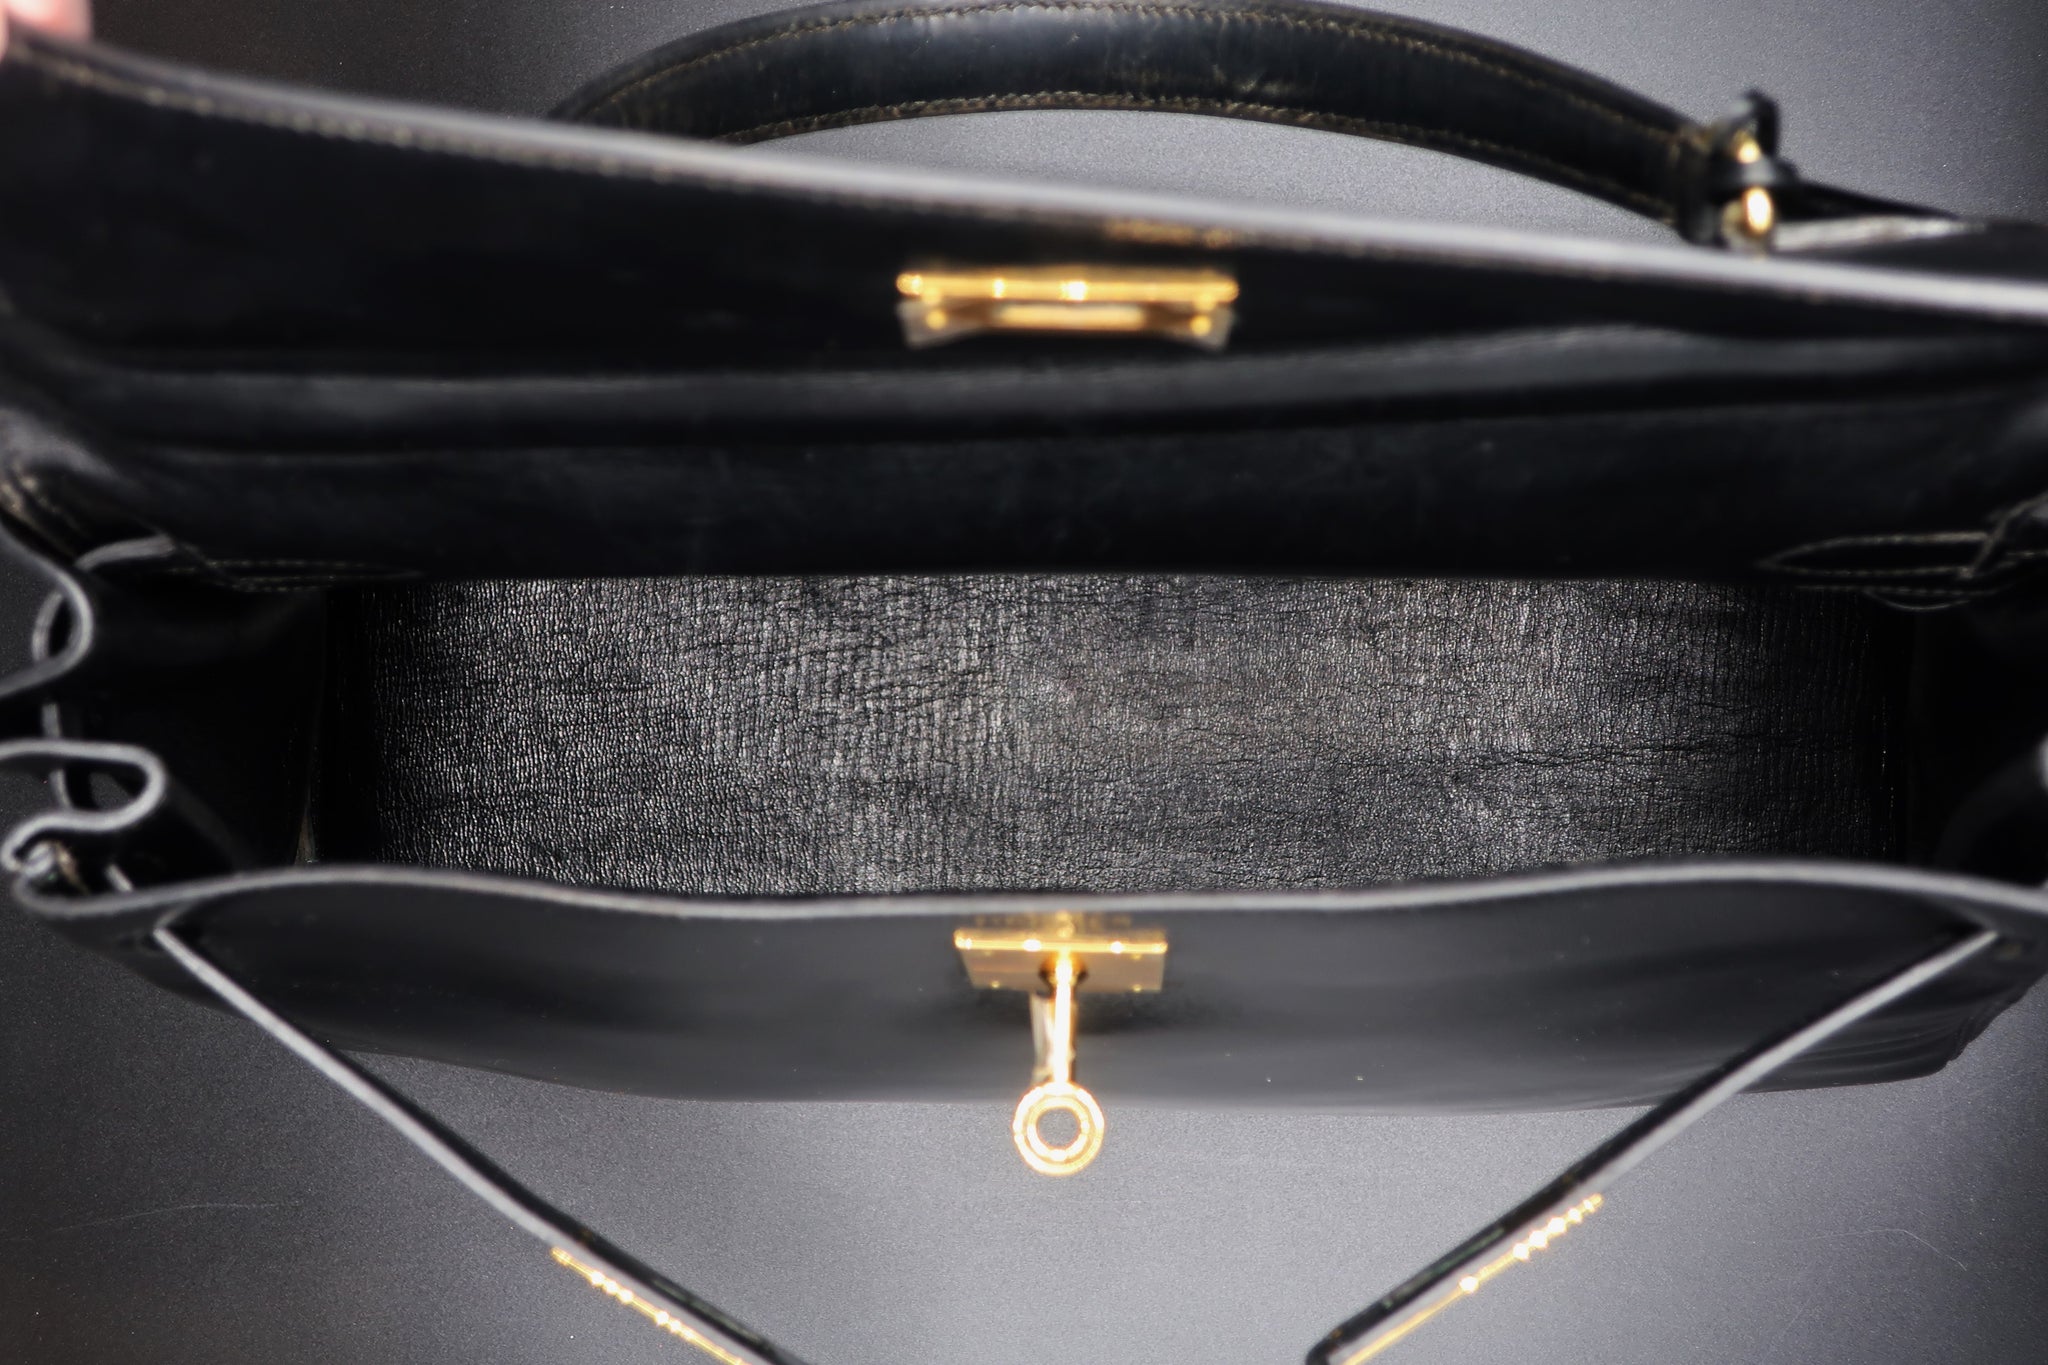 Hermès Kelly 32 CM Black Bag – hk-vintage